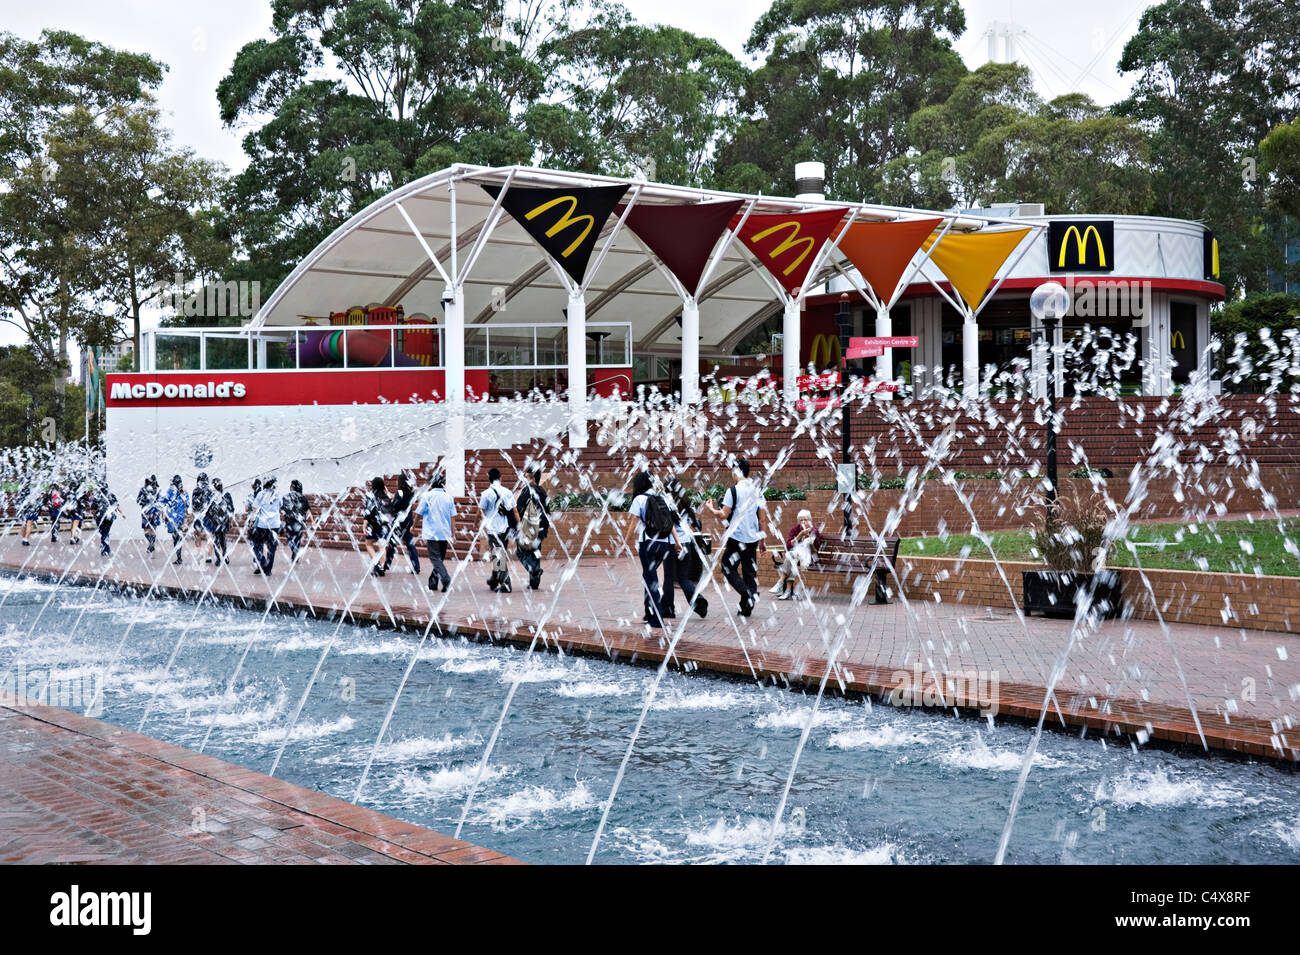 McDonald's Restaurant avec des fontaines et des touristes à pied de Darling Harbour à Sydney New South Wales Australie Banque D'Images